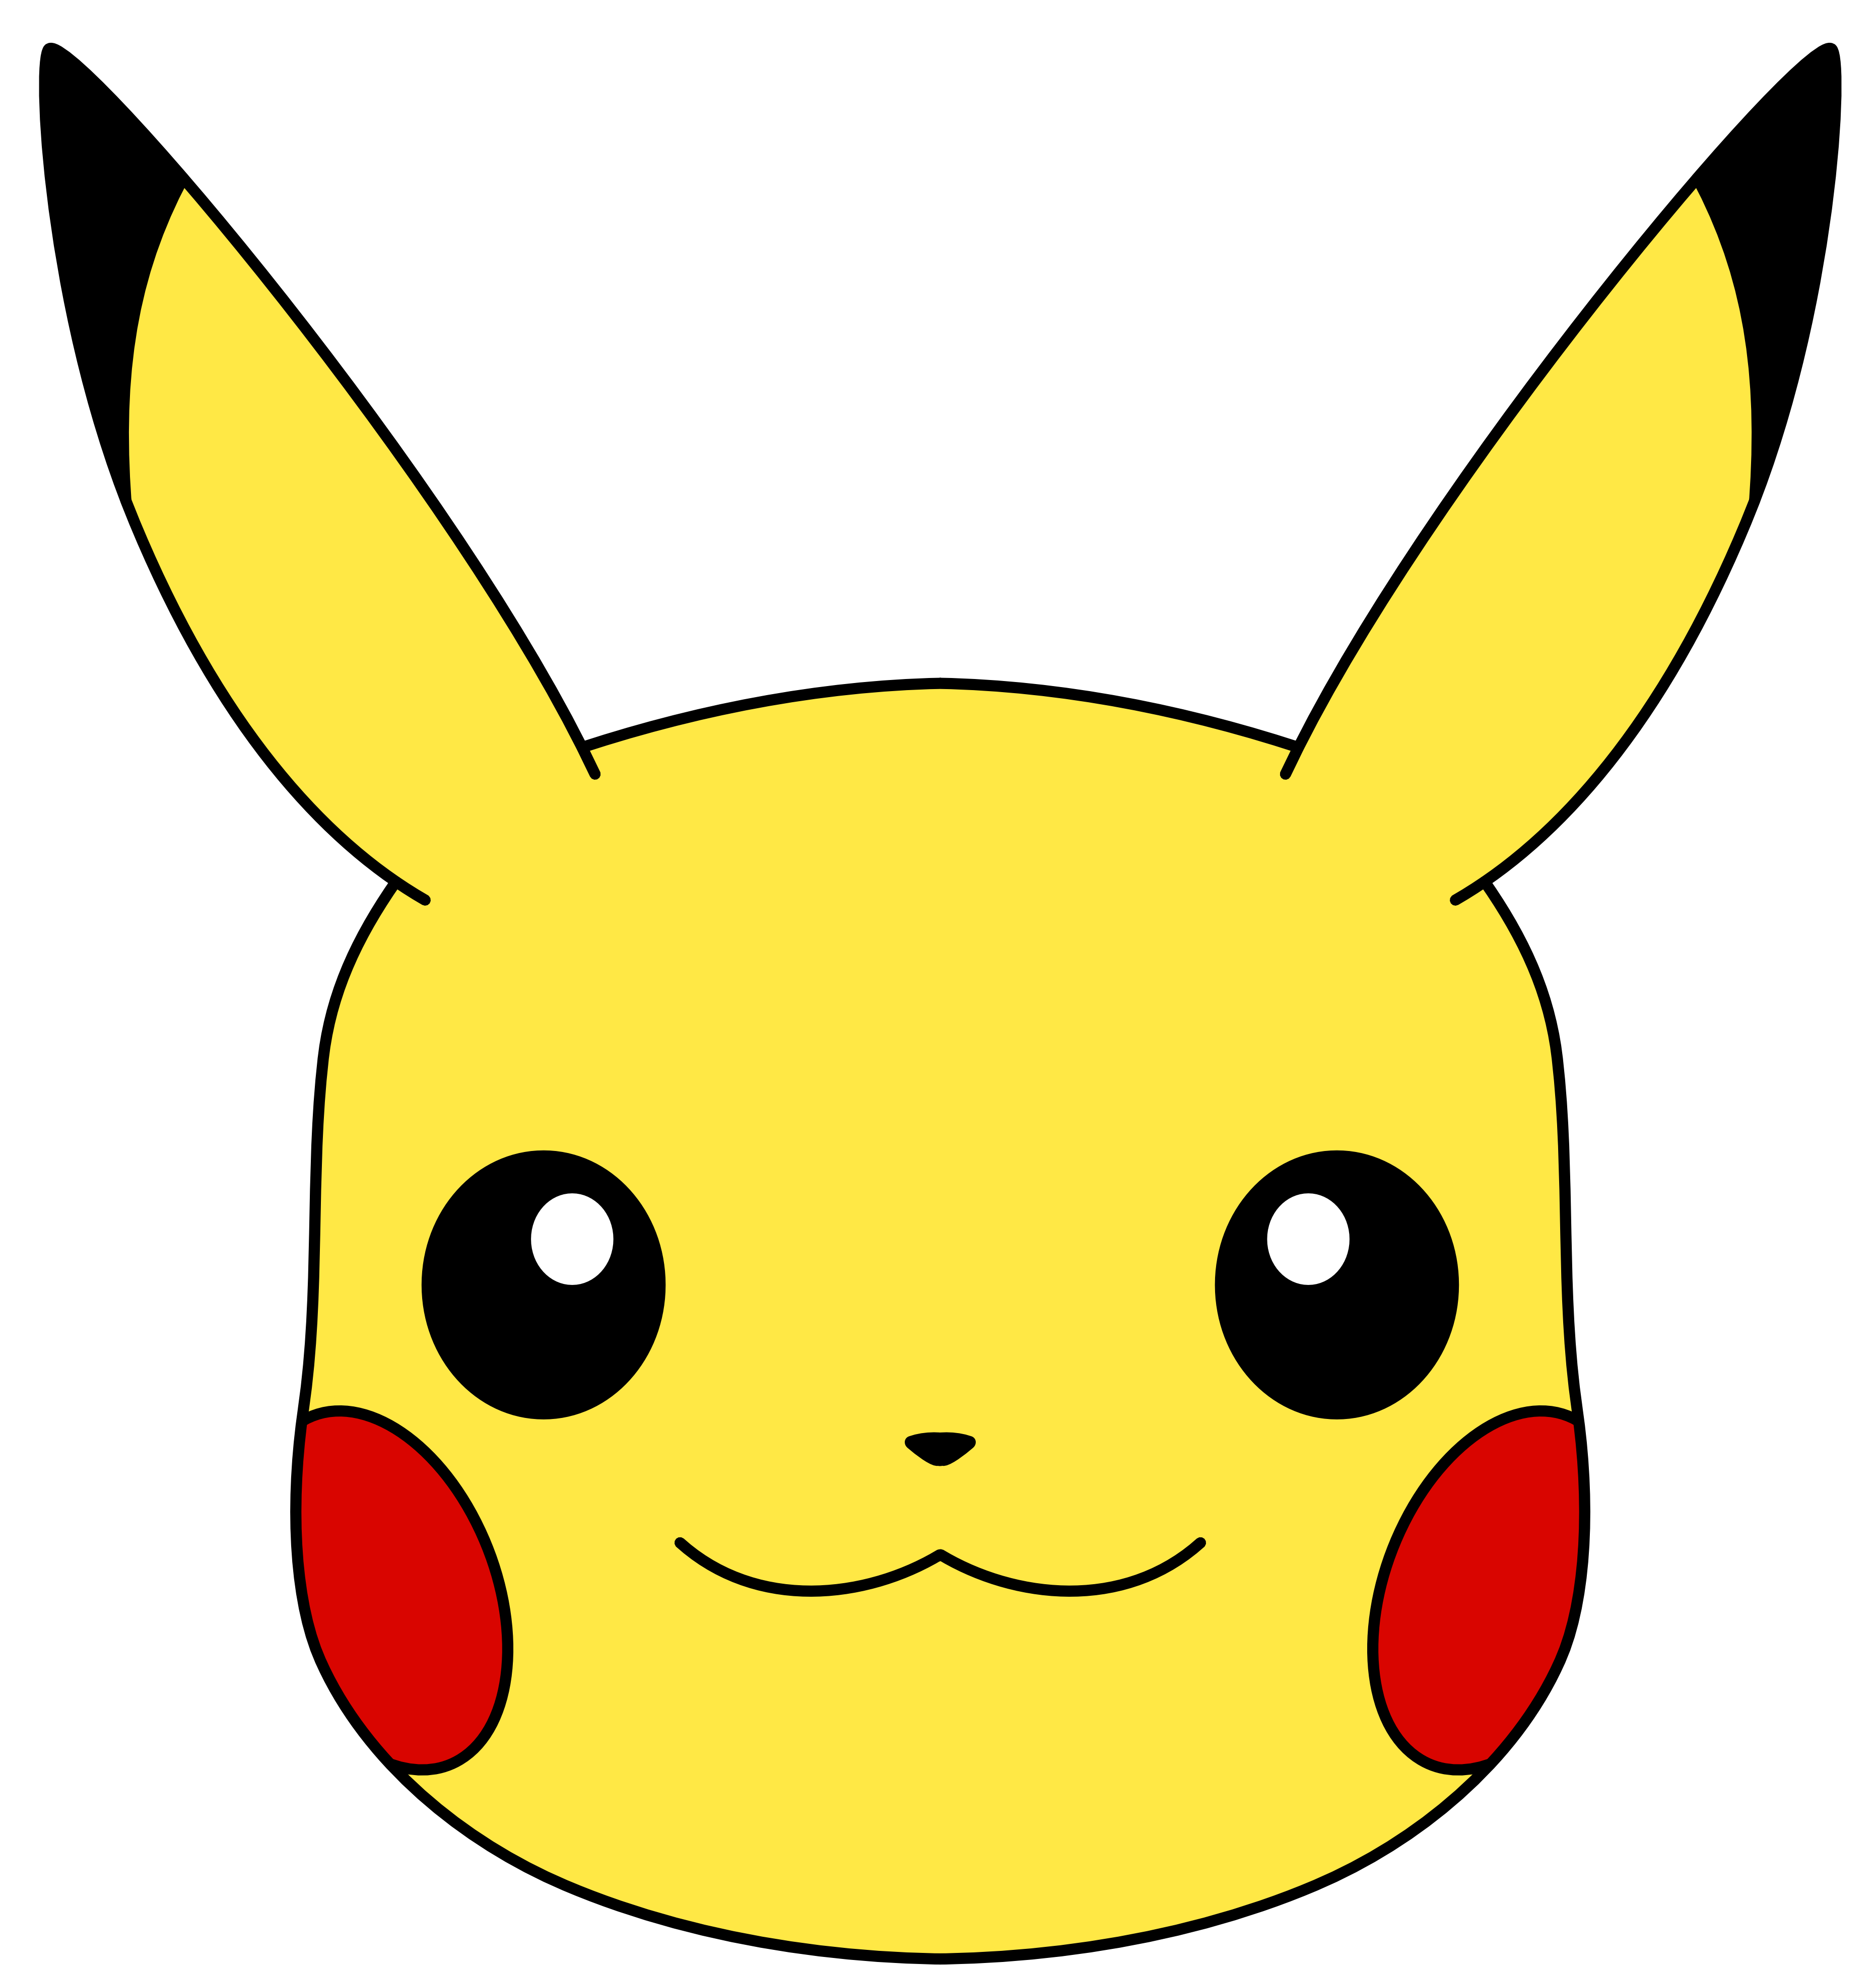 pikachu-face-png-transparent-pikachu-face-png-images-pluspng